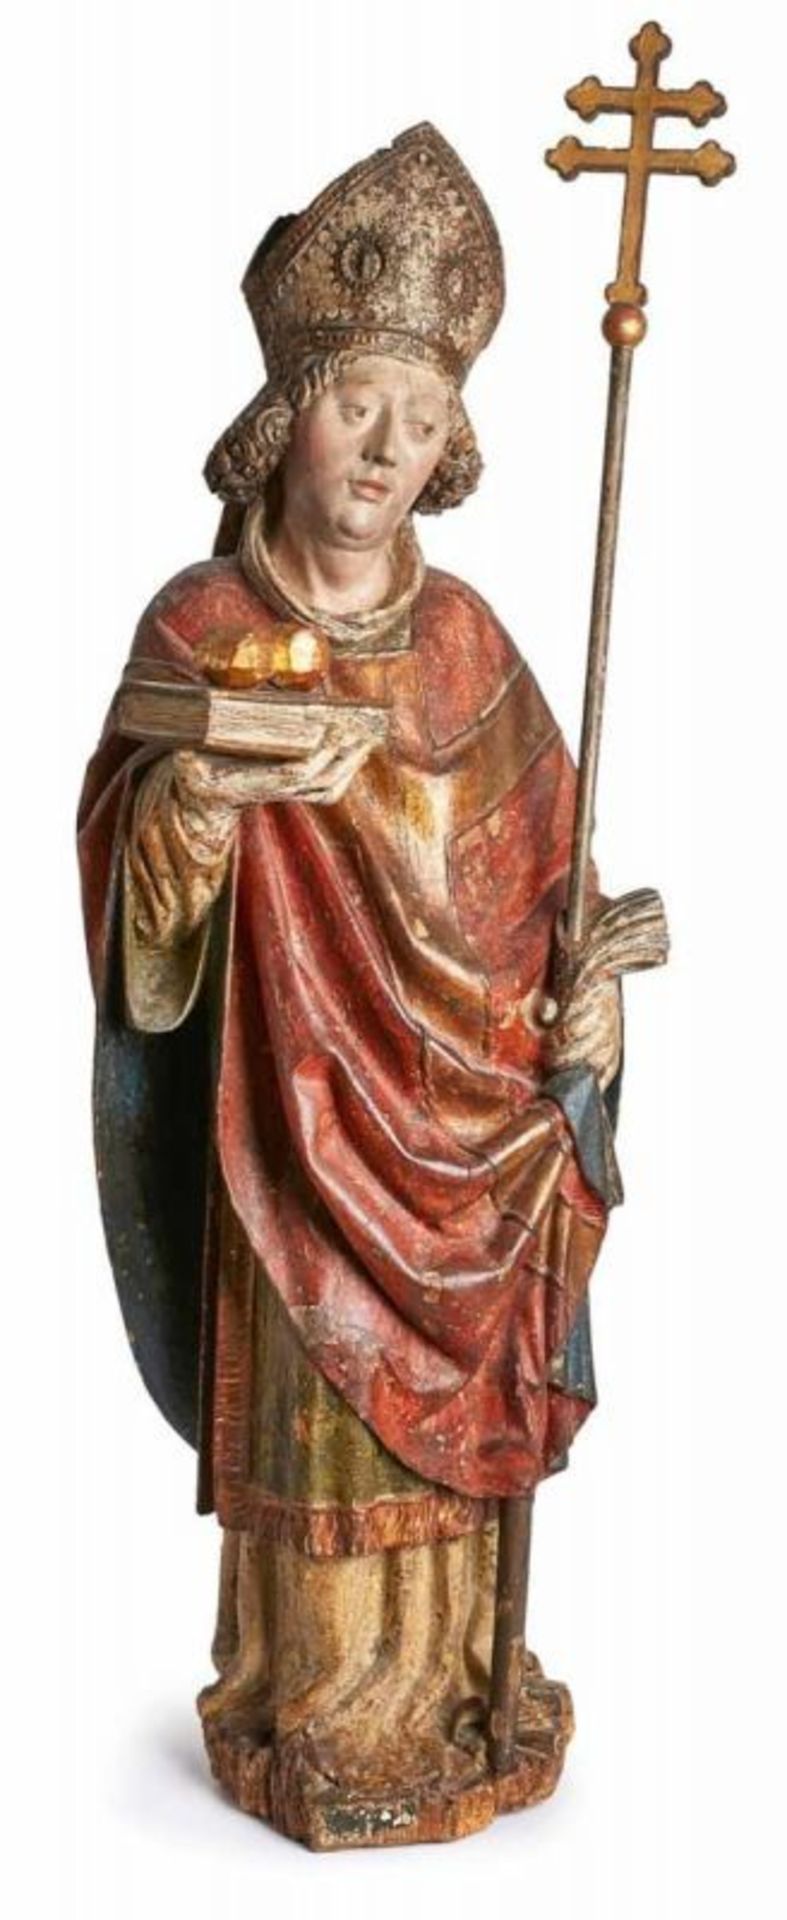 Hl. Nikolaus, süddt. 17. Jh. Lindenholz, vollrd. geschnitzt, farbig gefasst u. vergoldet. Standfigur - Bild 3 aus 6